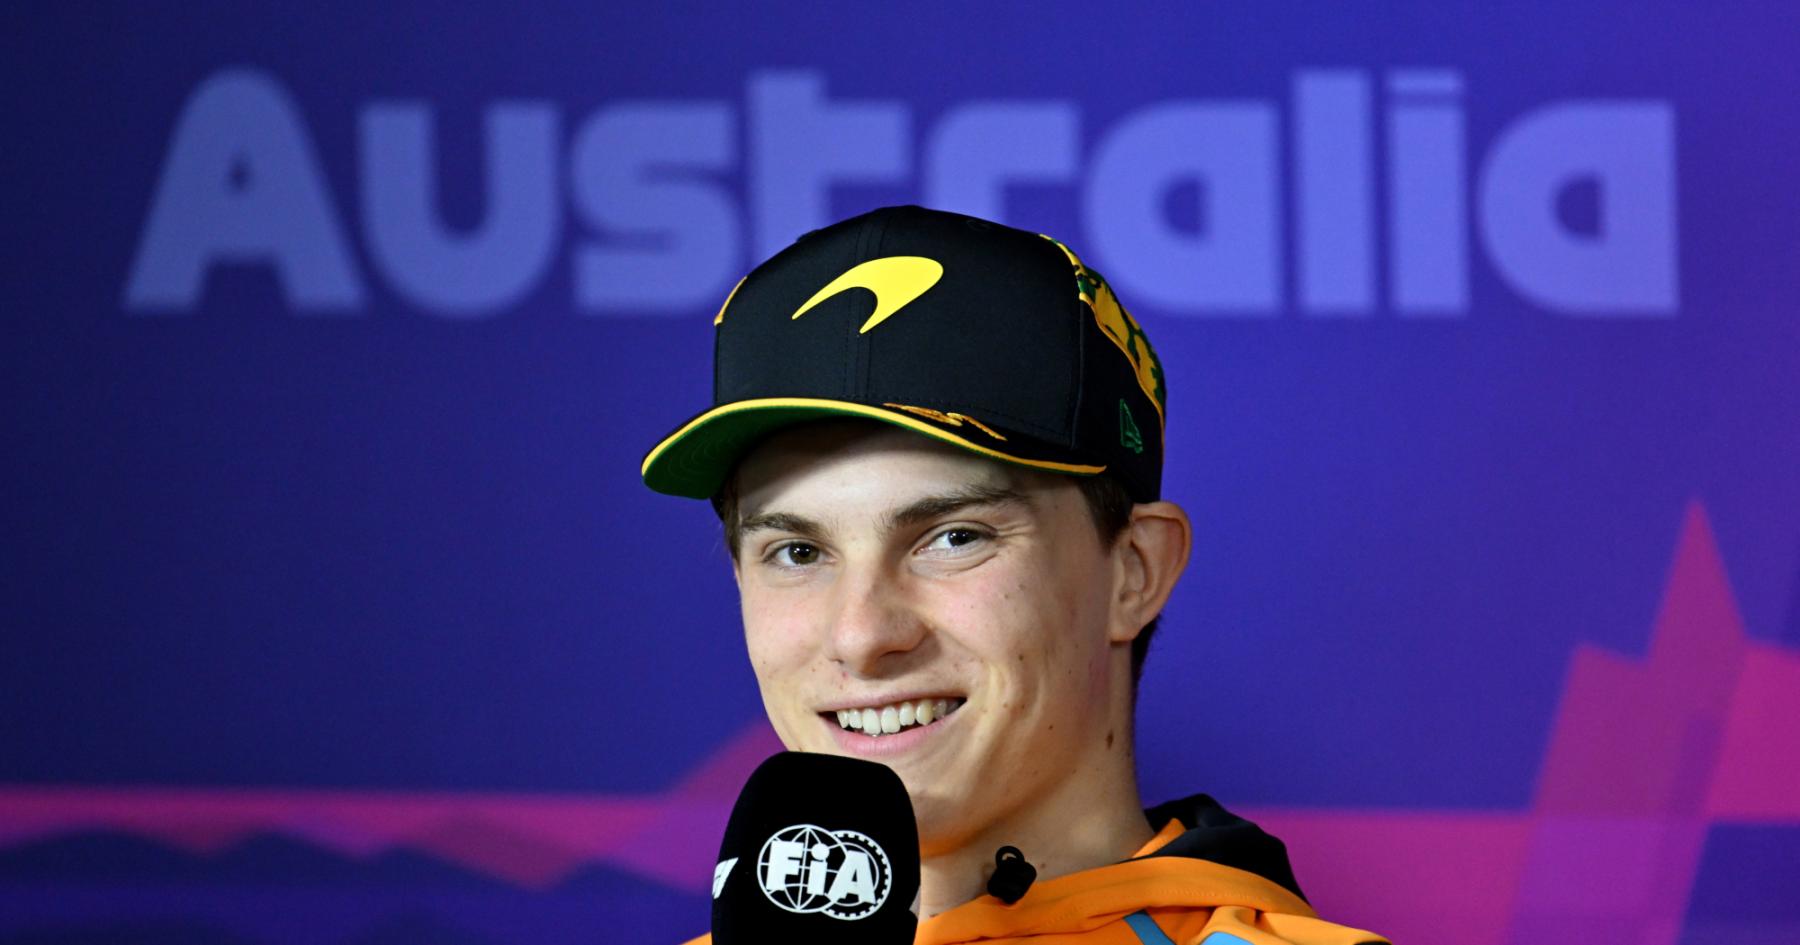 Piastri Optimistic about Securing Podium Finish at Melbourne F1 Race